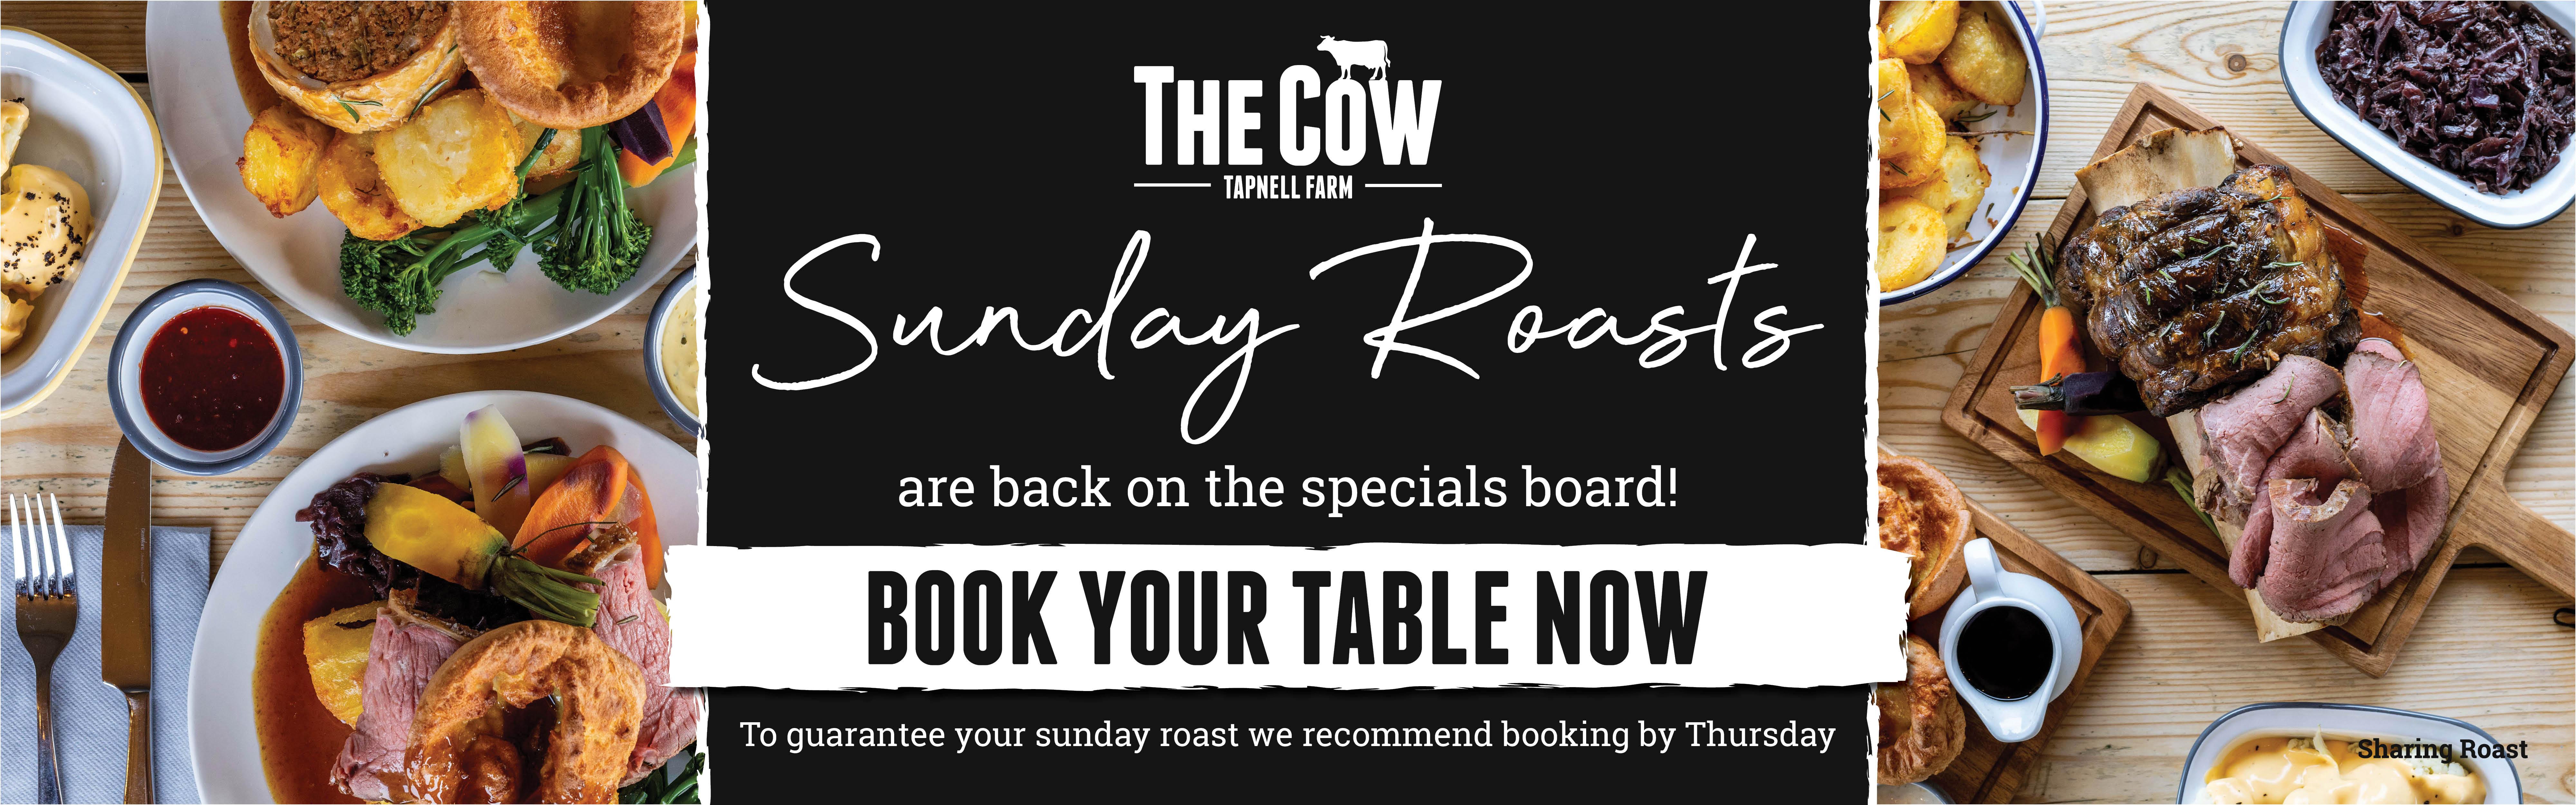 Cow Sunday Roasts Web Banner v2